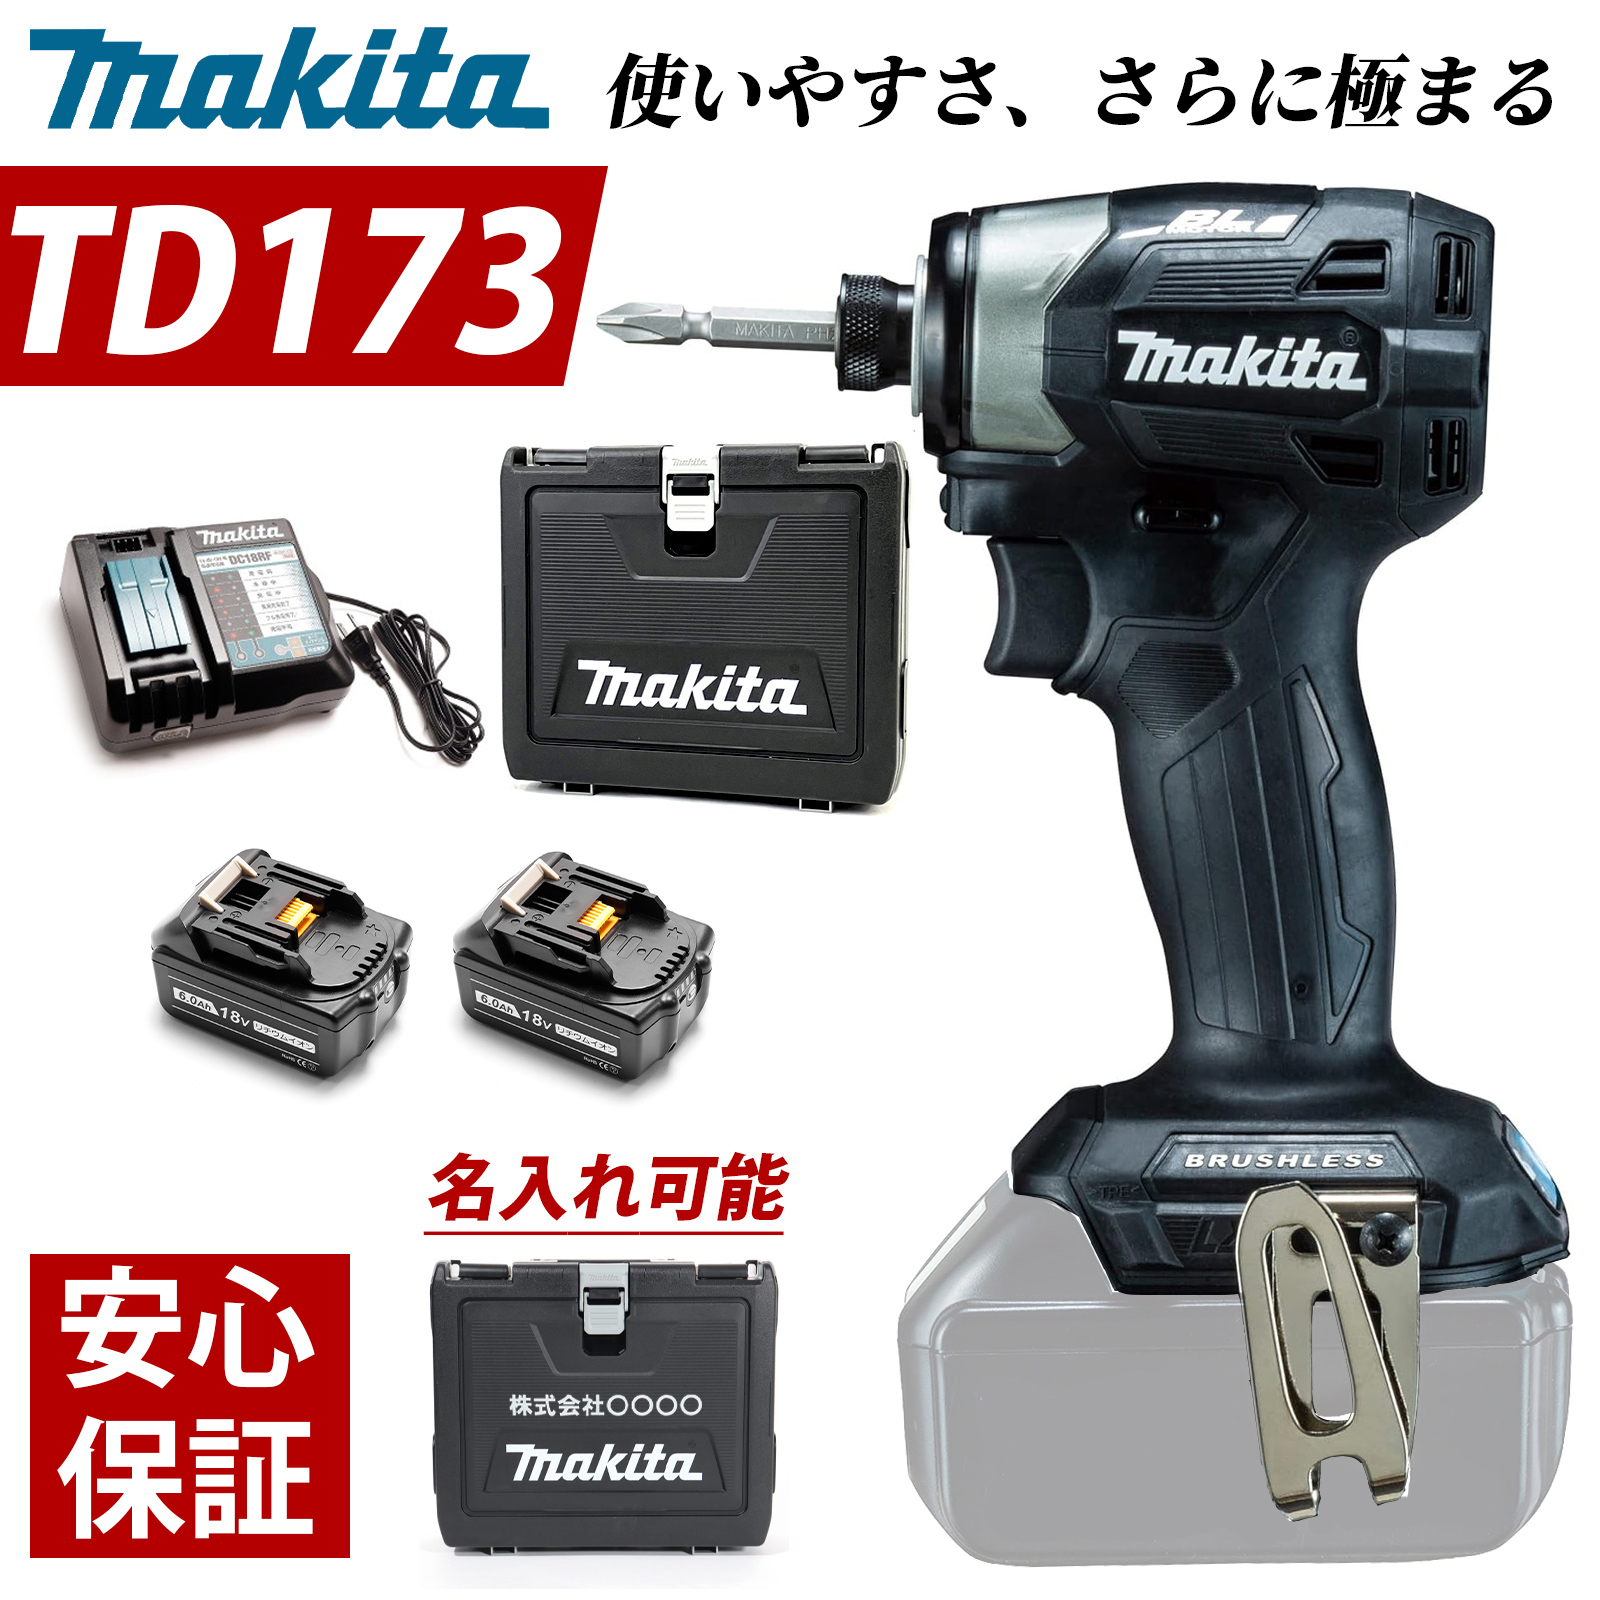 マキタ インパクトドライバー 18V TD173DRGX フルセット MAKITA TD172 後継 充電式 BL1860B 互換 バッテリー 2個  6.0Ah 急速充電器 収納ケース 付き